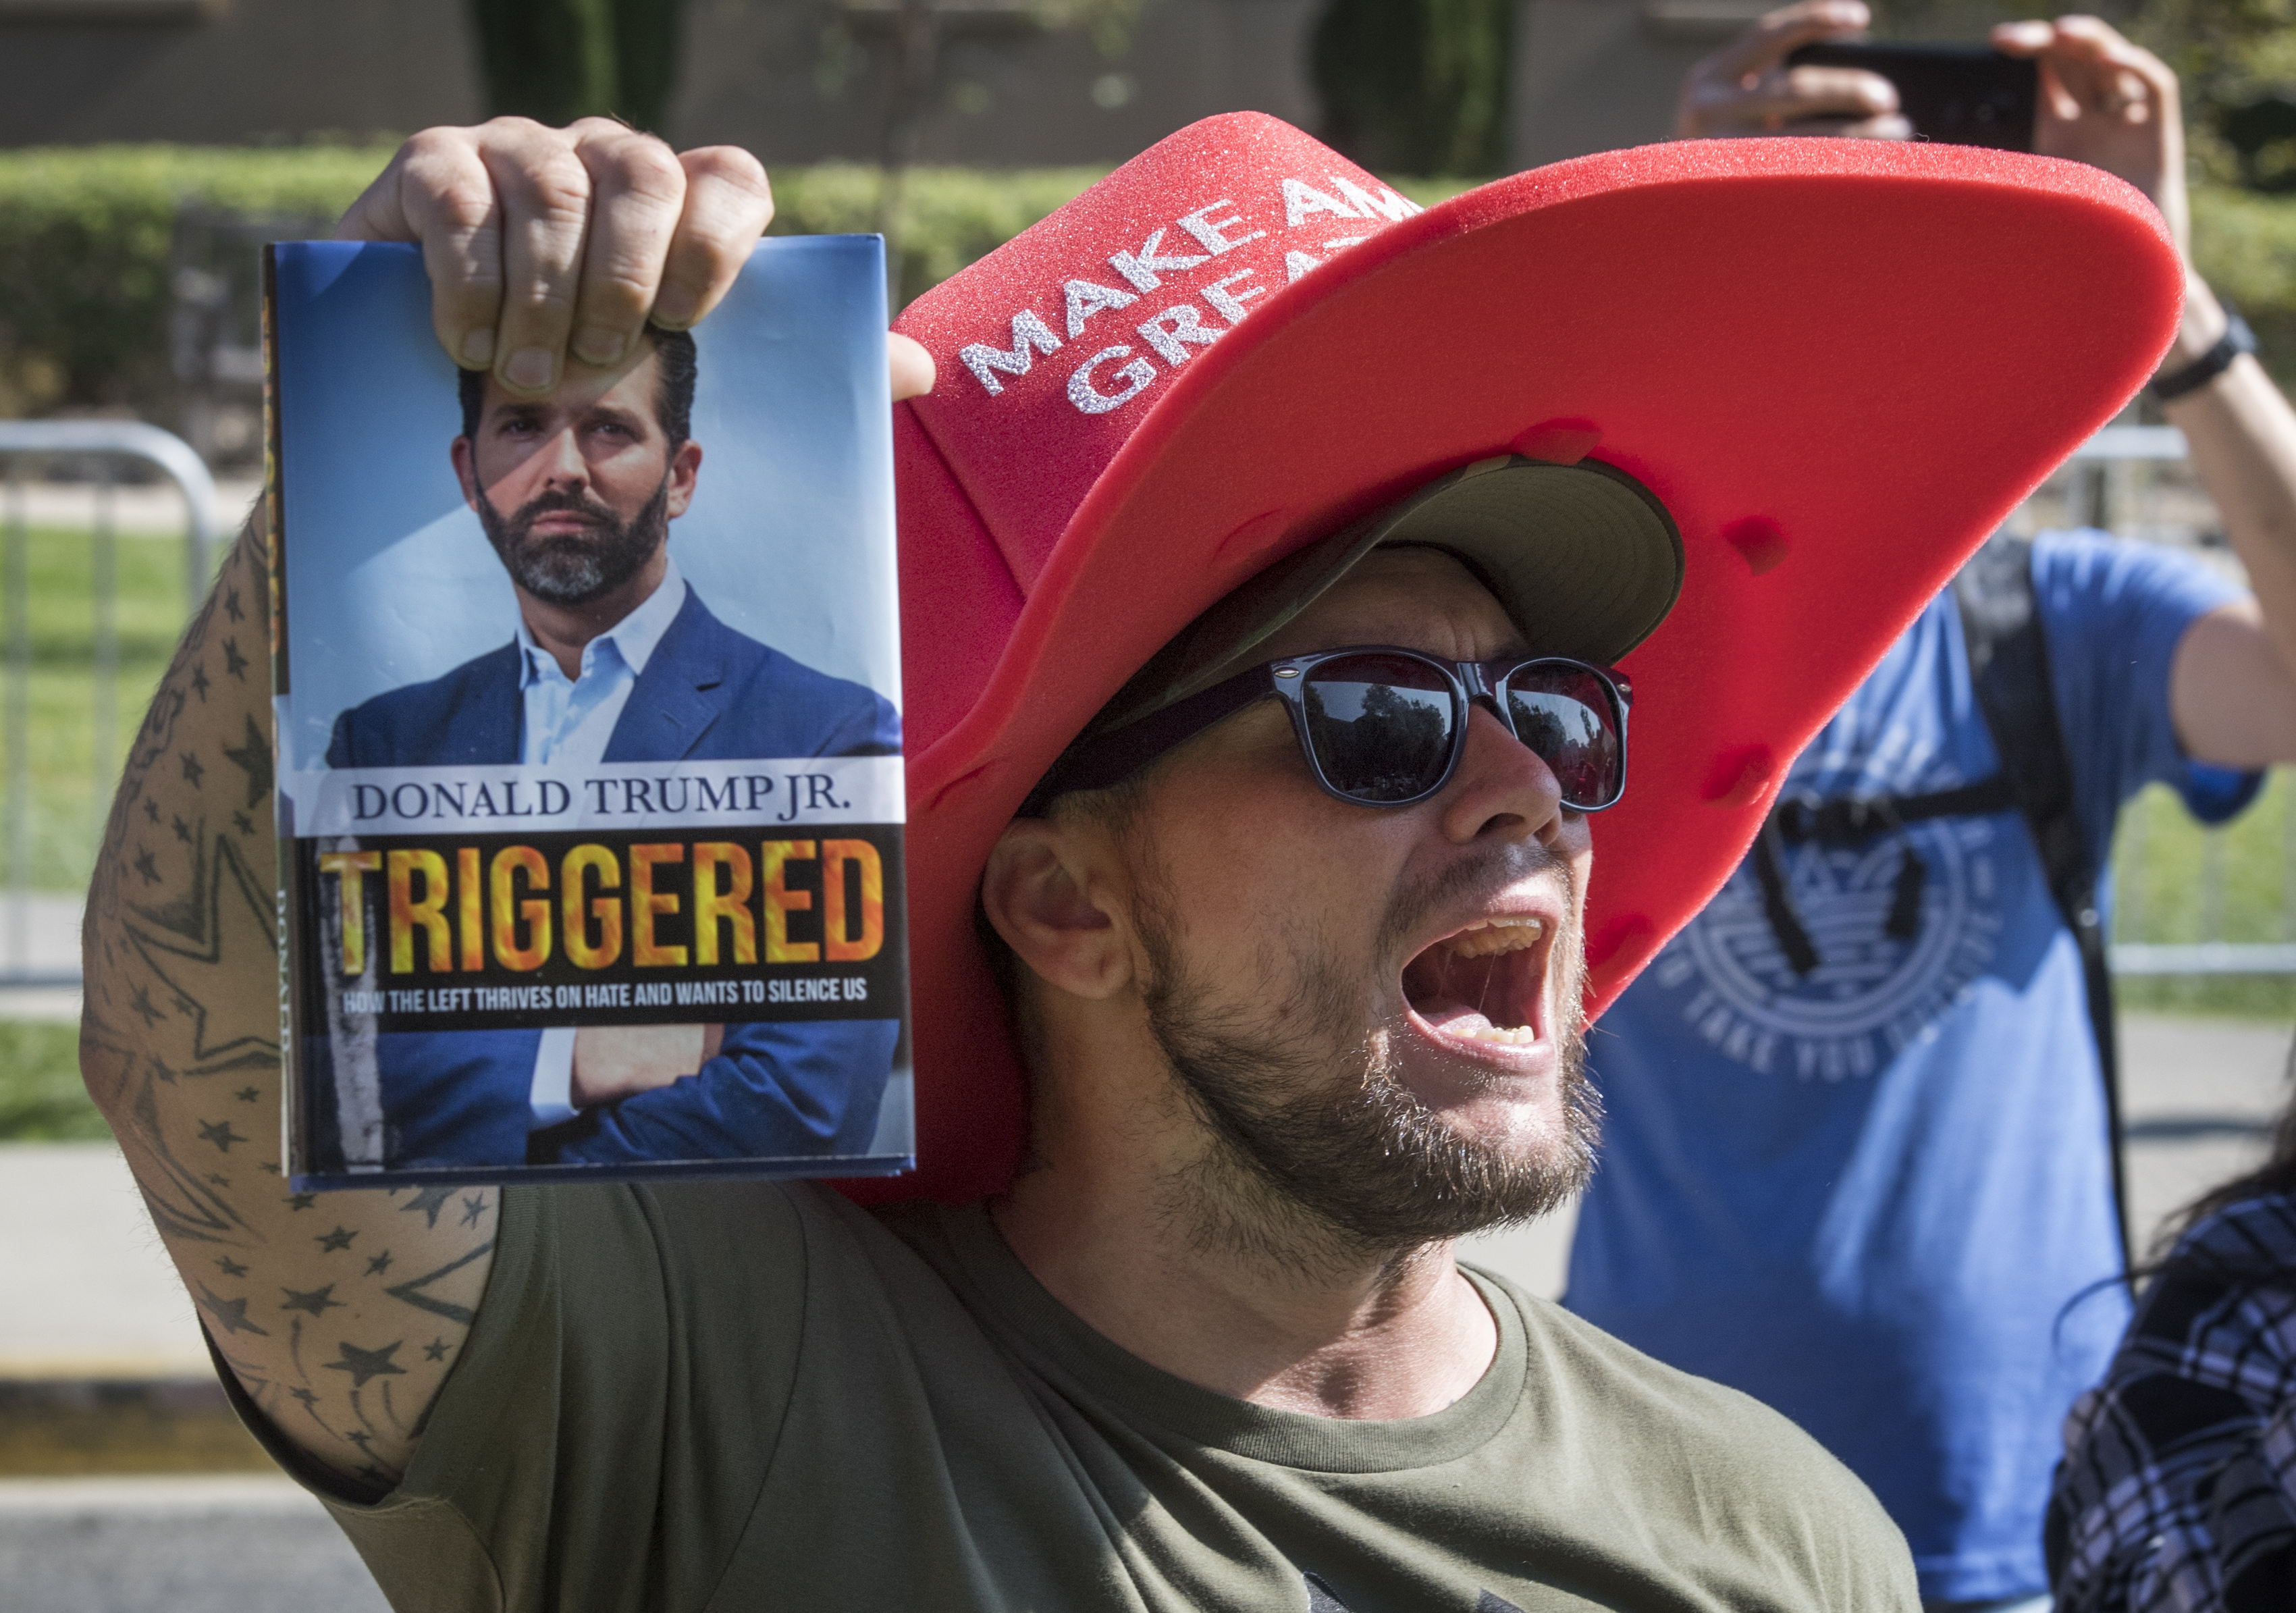 Donald Trump Jr. elment bemutatni TRIGGERED című könyvét, de szélsőjobbosok kifütyülték, ezért levonult a színpadról